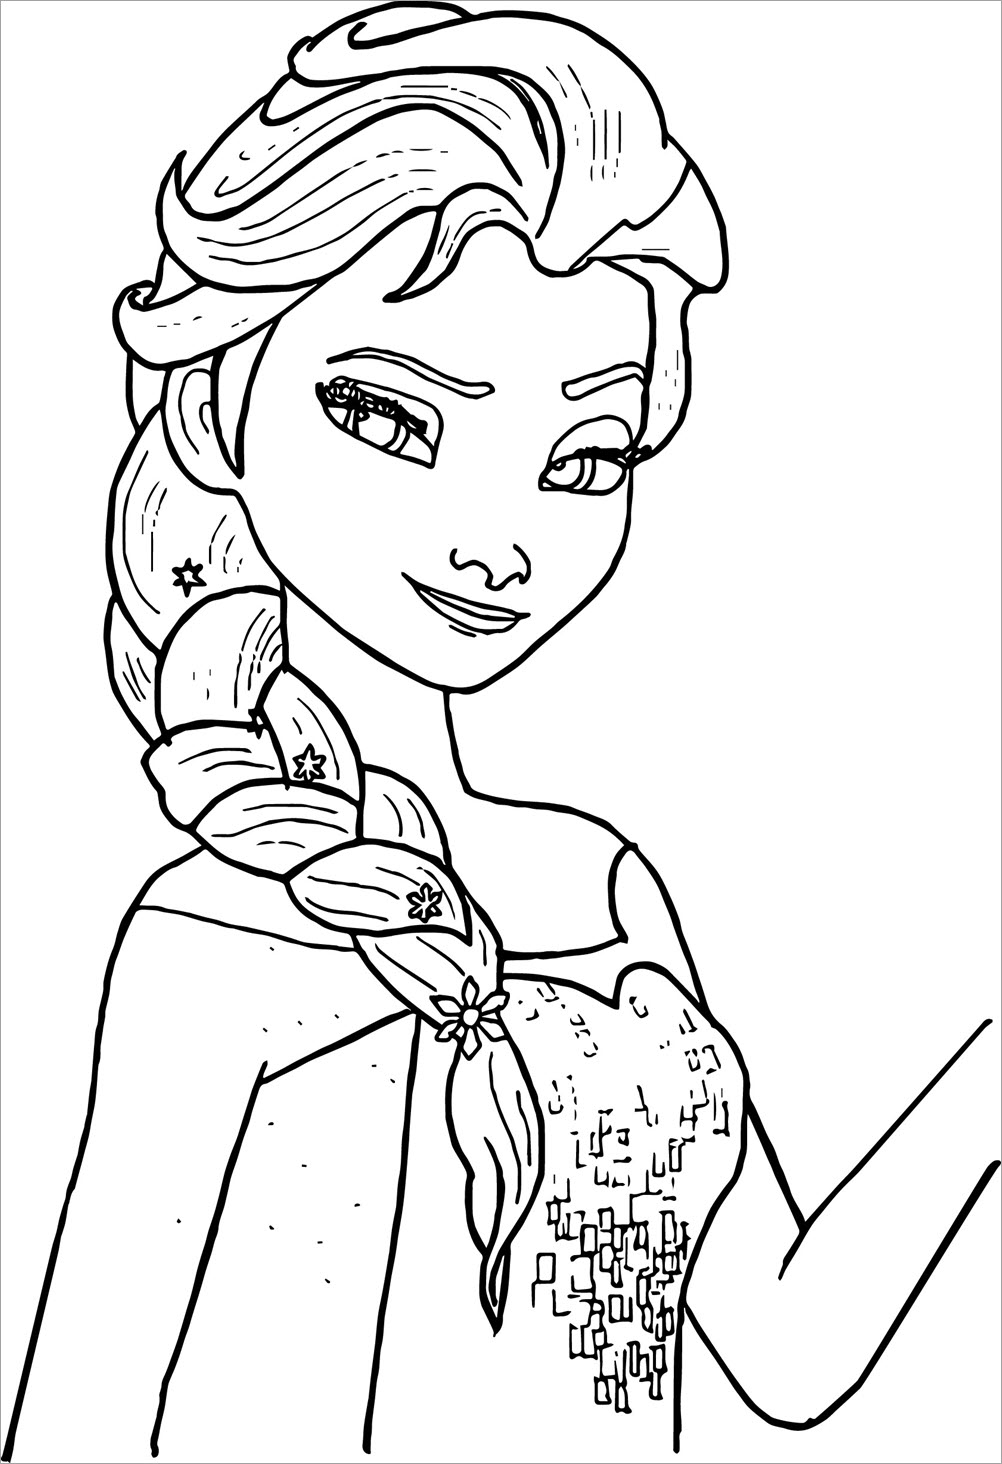 Tổng hợp các bức tranh tô màu công chúa Elsa đẹp nhất dành cho bé | Tranh,  Elsa, Công chúa